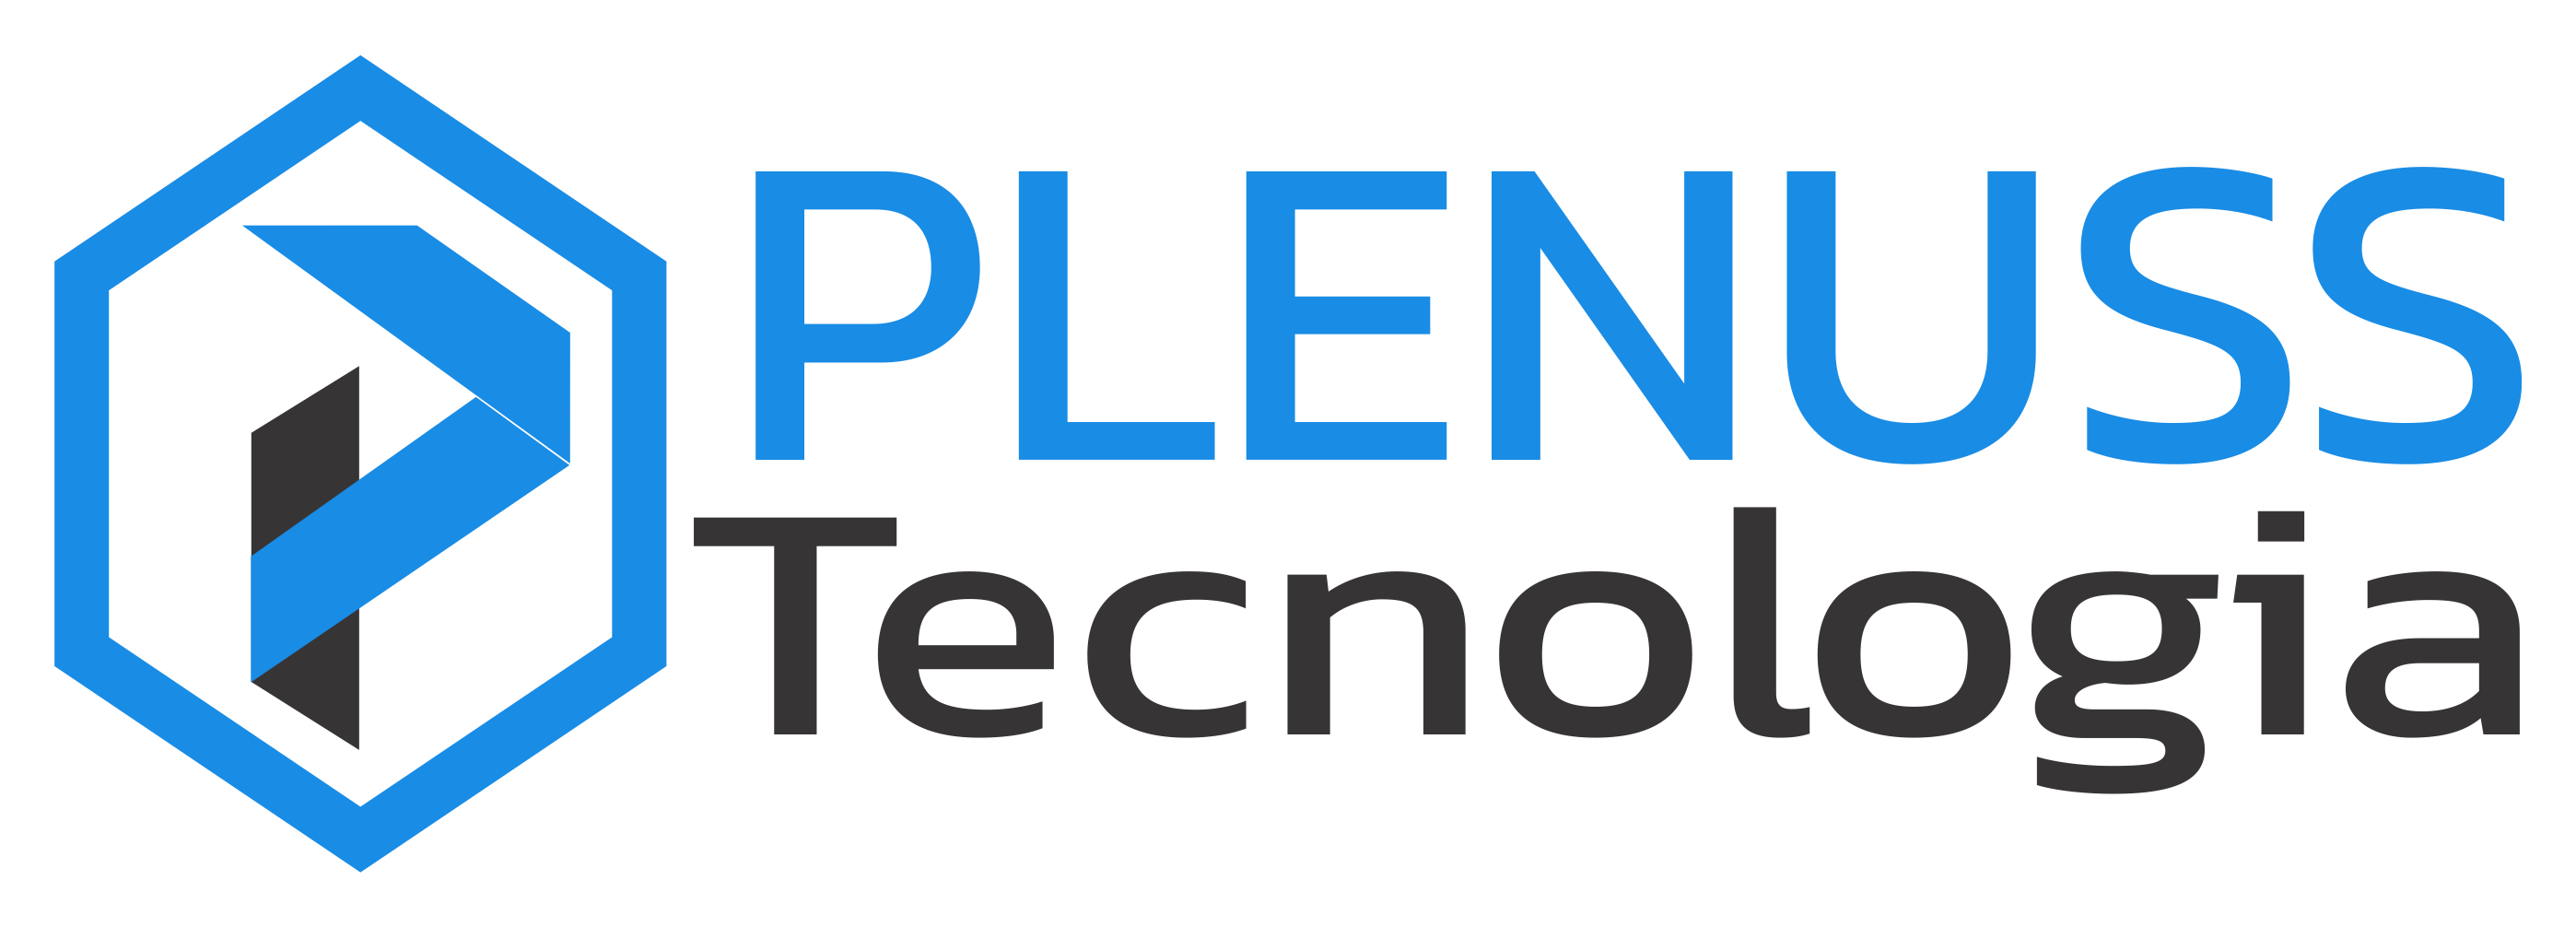 PLENUSS Tecnologia - Serviços de Ti, Segurança Eletrônica, Telefonia, Cabeamento, Elétrica